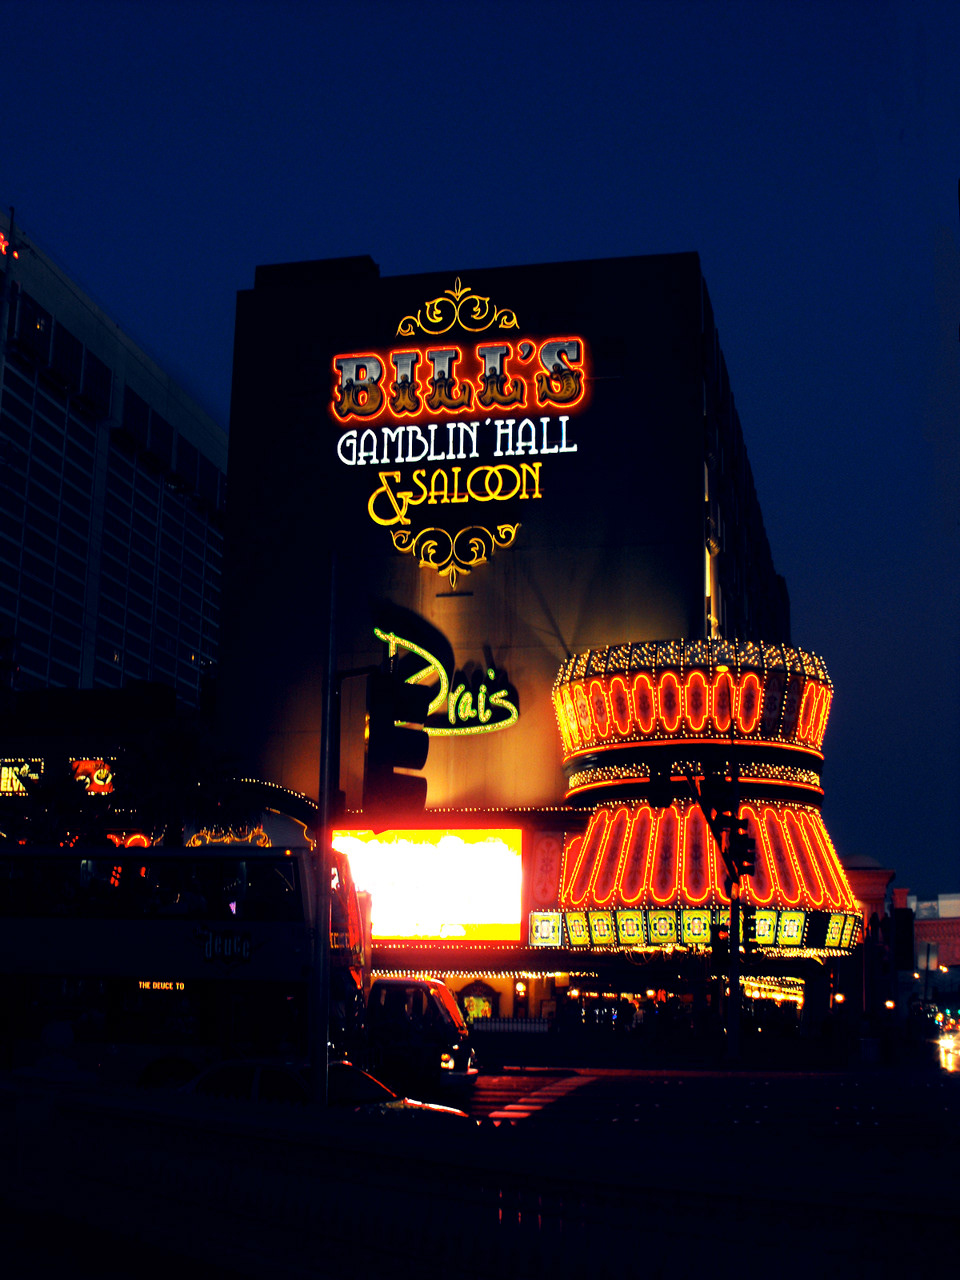 Desinations places spain Las Vegas lights poland cactus buildings palace gambling